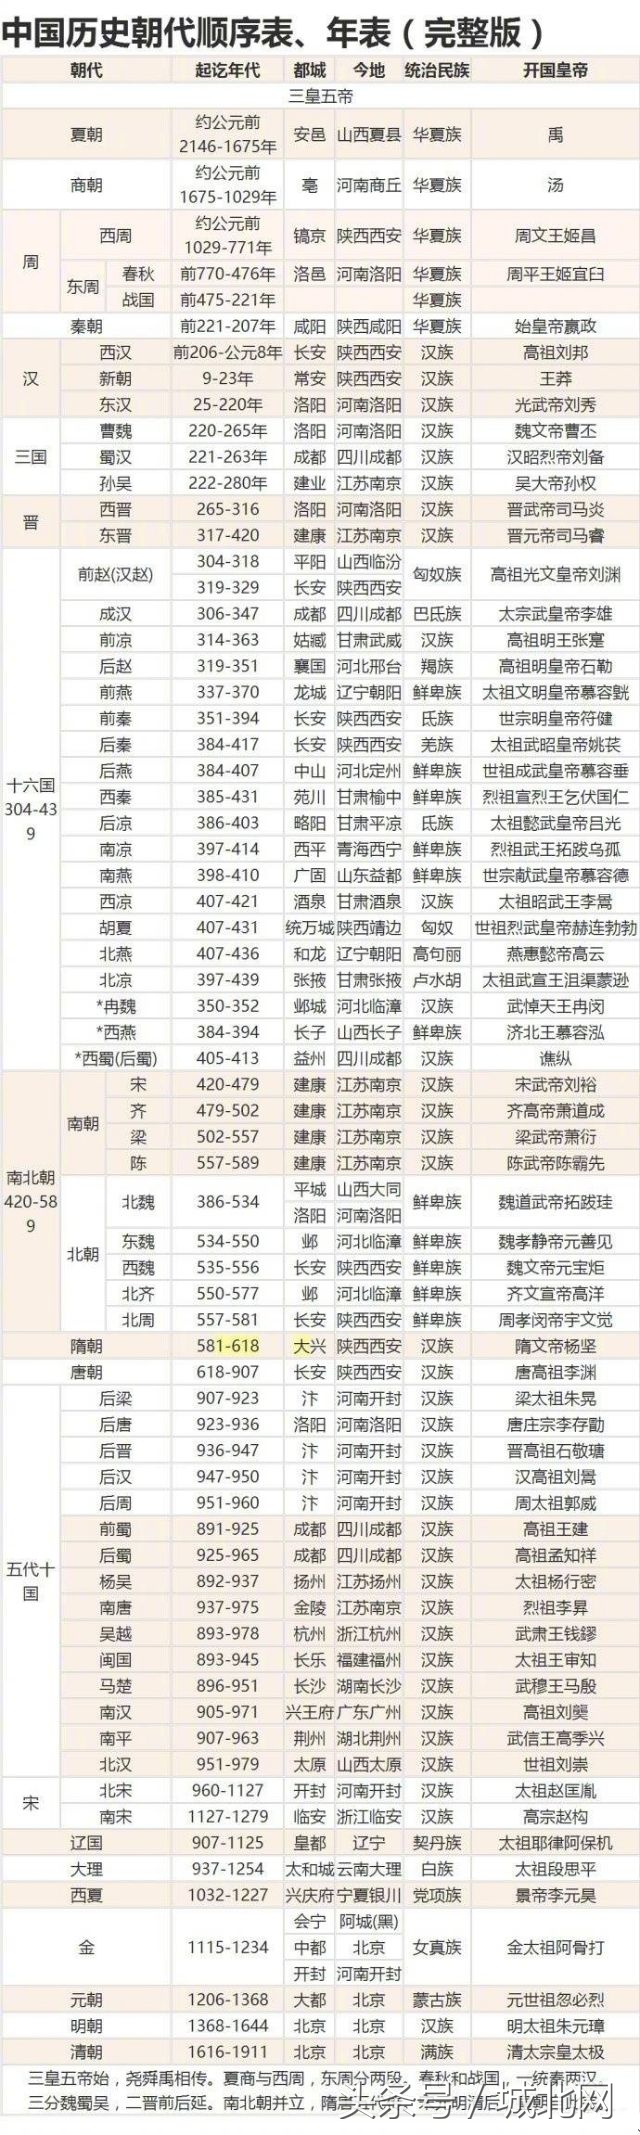 朝代列表(中国历史朝代顺序表、年表（完整版）)